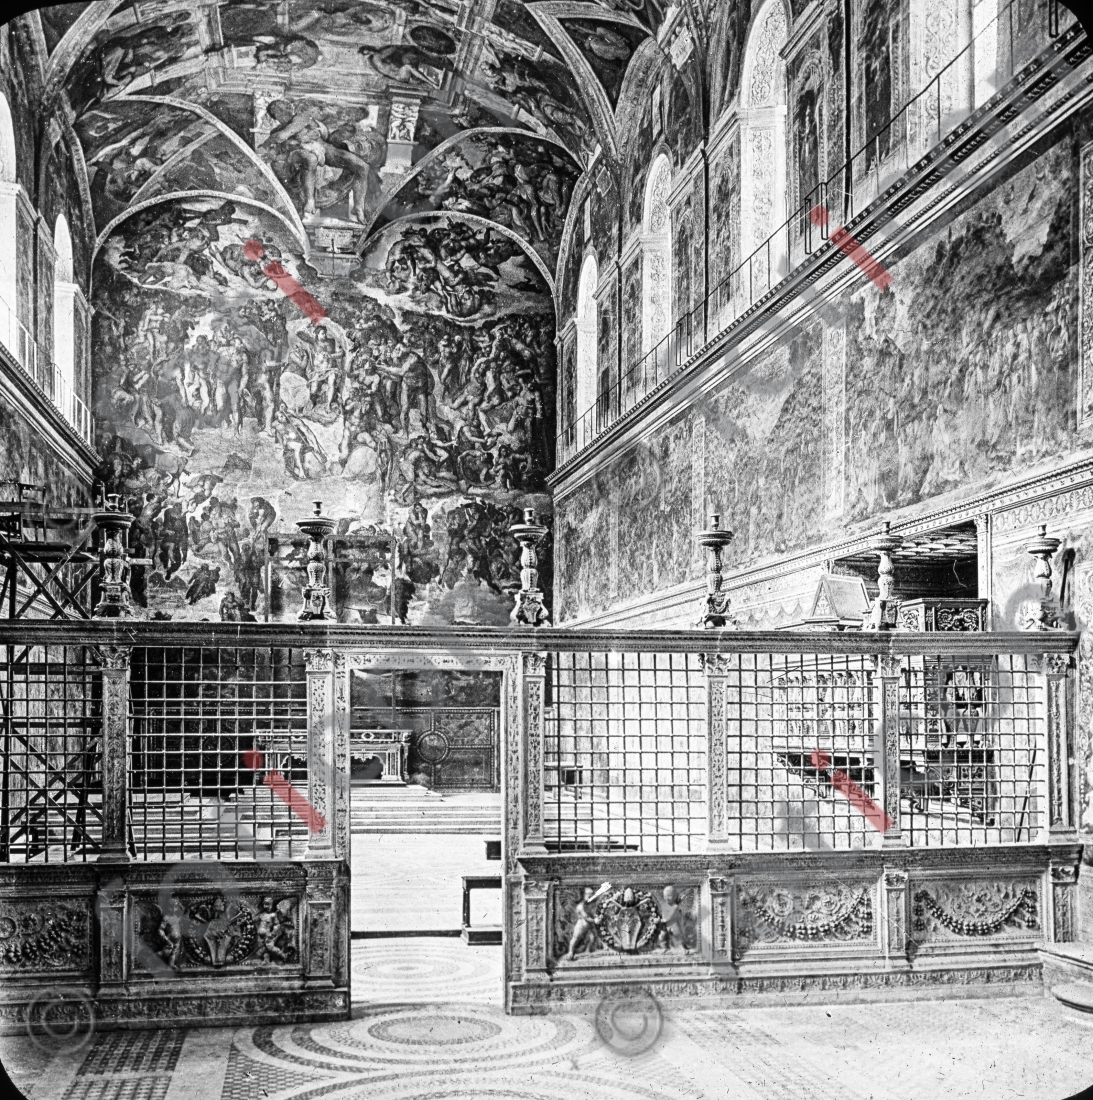 Sixtinische Kapelle | Sistine Chapel - Foto foticon-simon-147-019-sw.jpg | foticon.de - Bilddatenbank für Motive aus Geschichte und Kultur